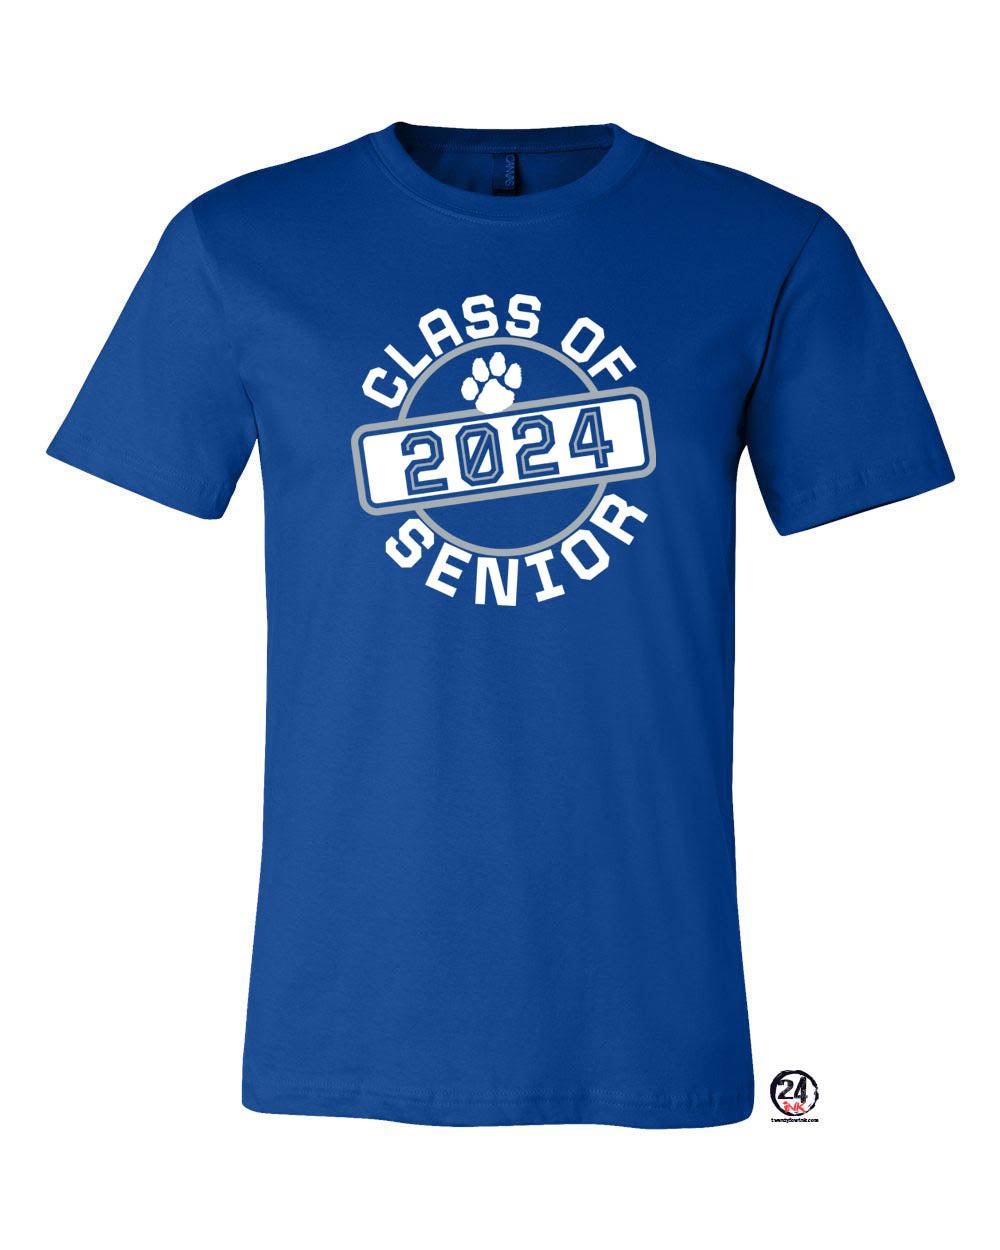 KRHS Senior Class 2024 T-shirt